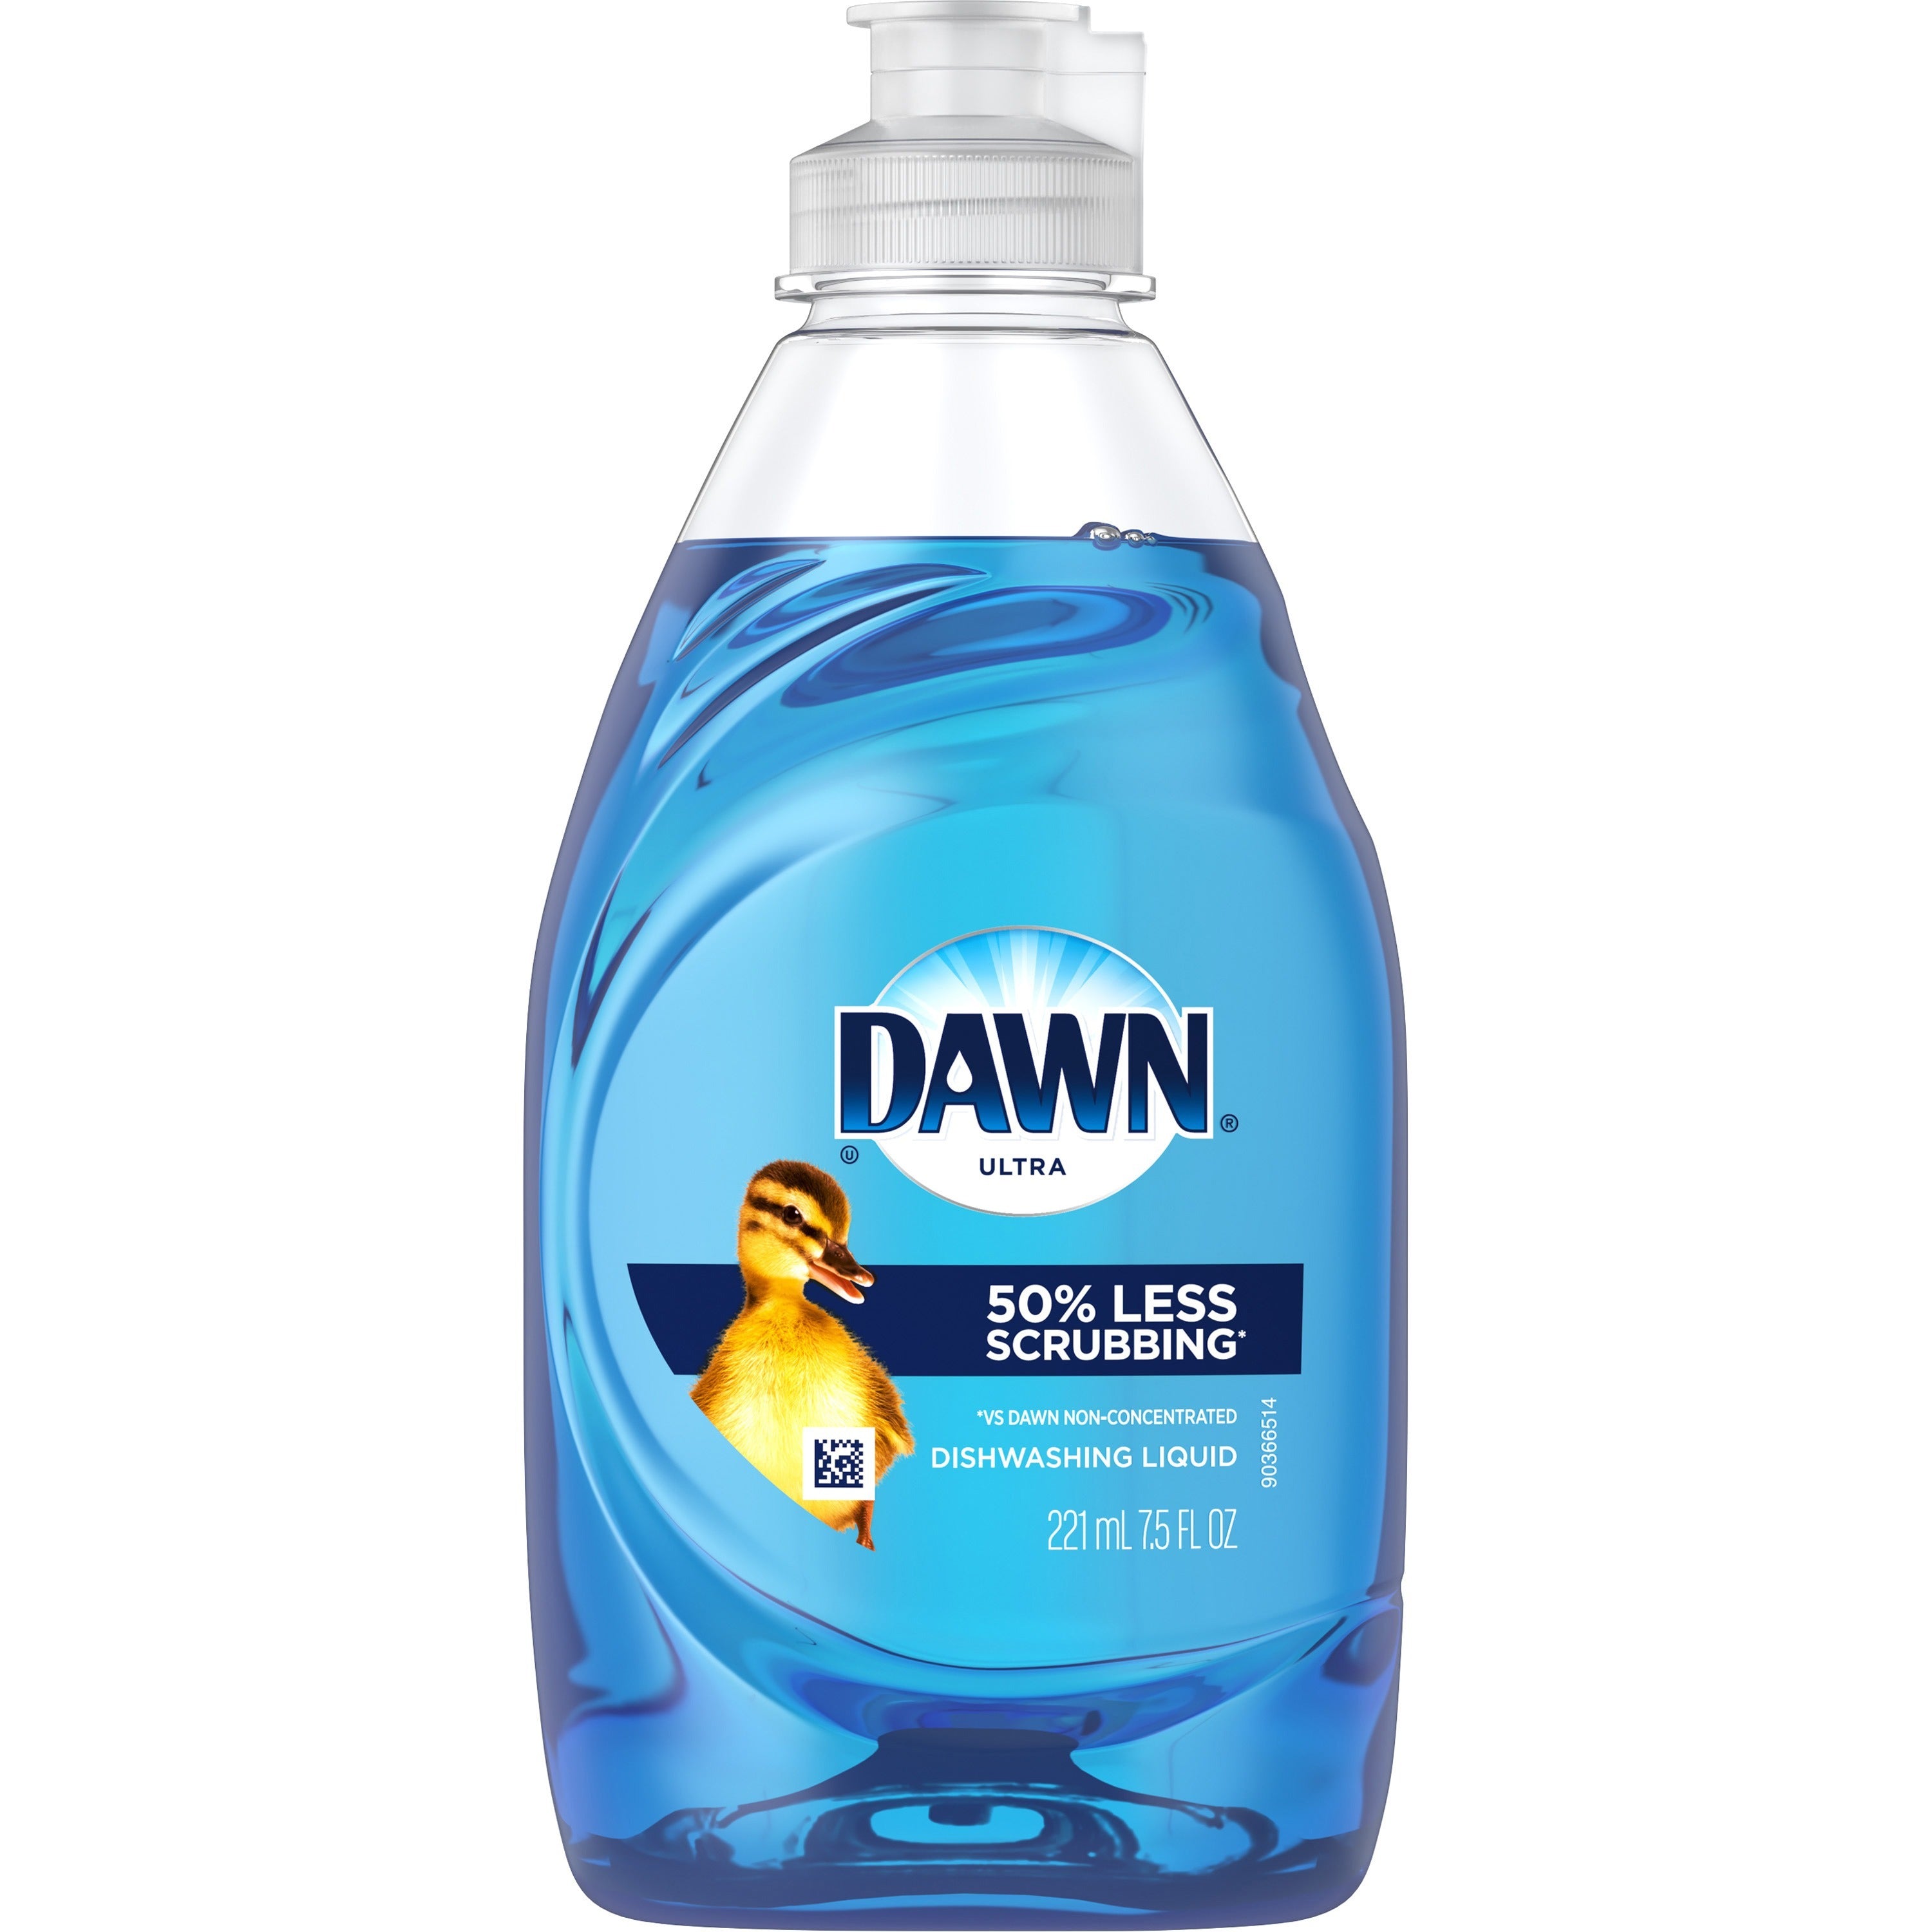 dawn-ultra-dish-liquid-soap-concentrate-75-fl-oz-02-quart-original-scent-18-carton-blue_pgc08124 - 1